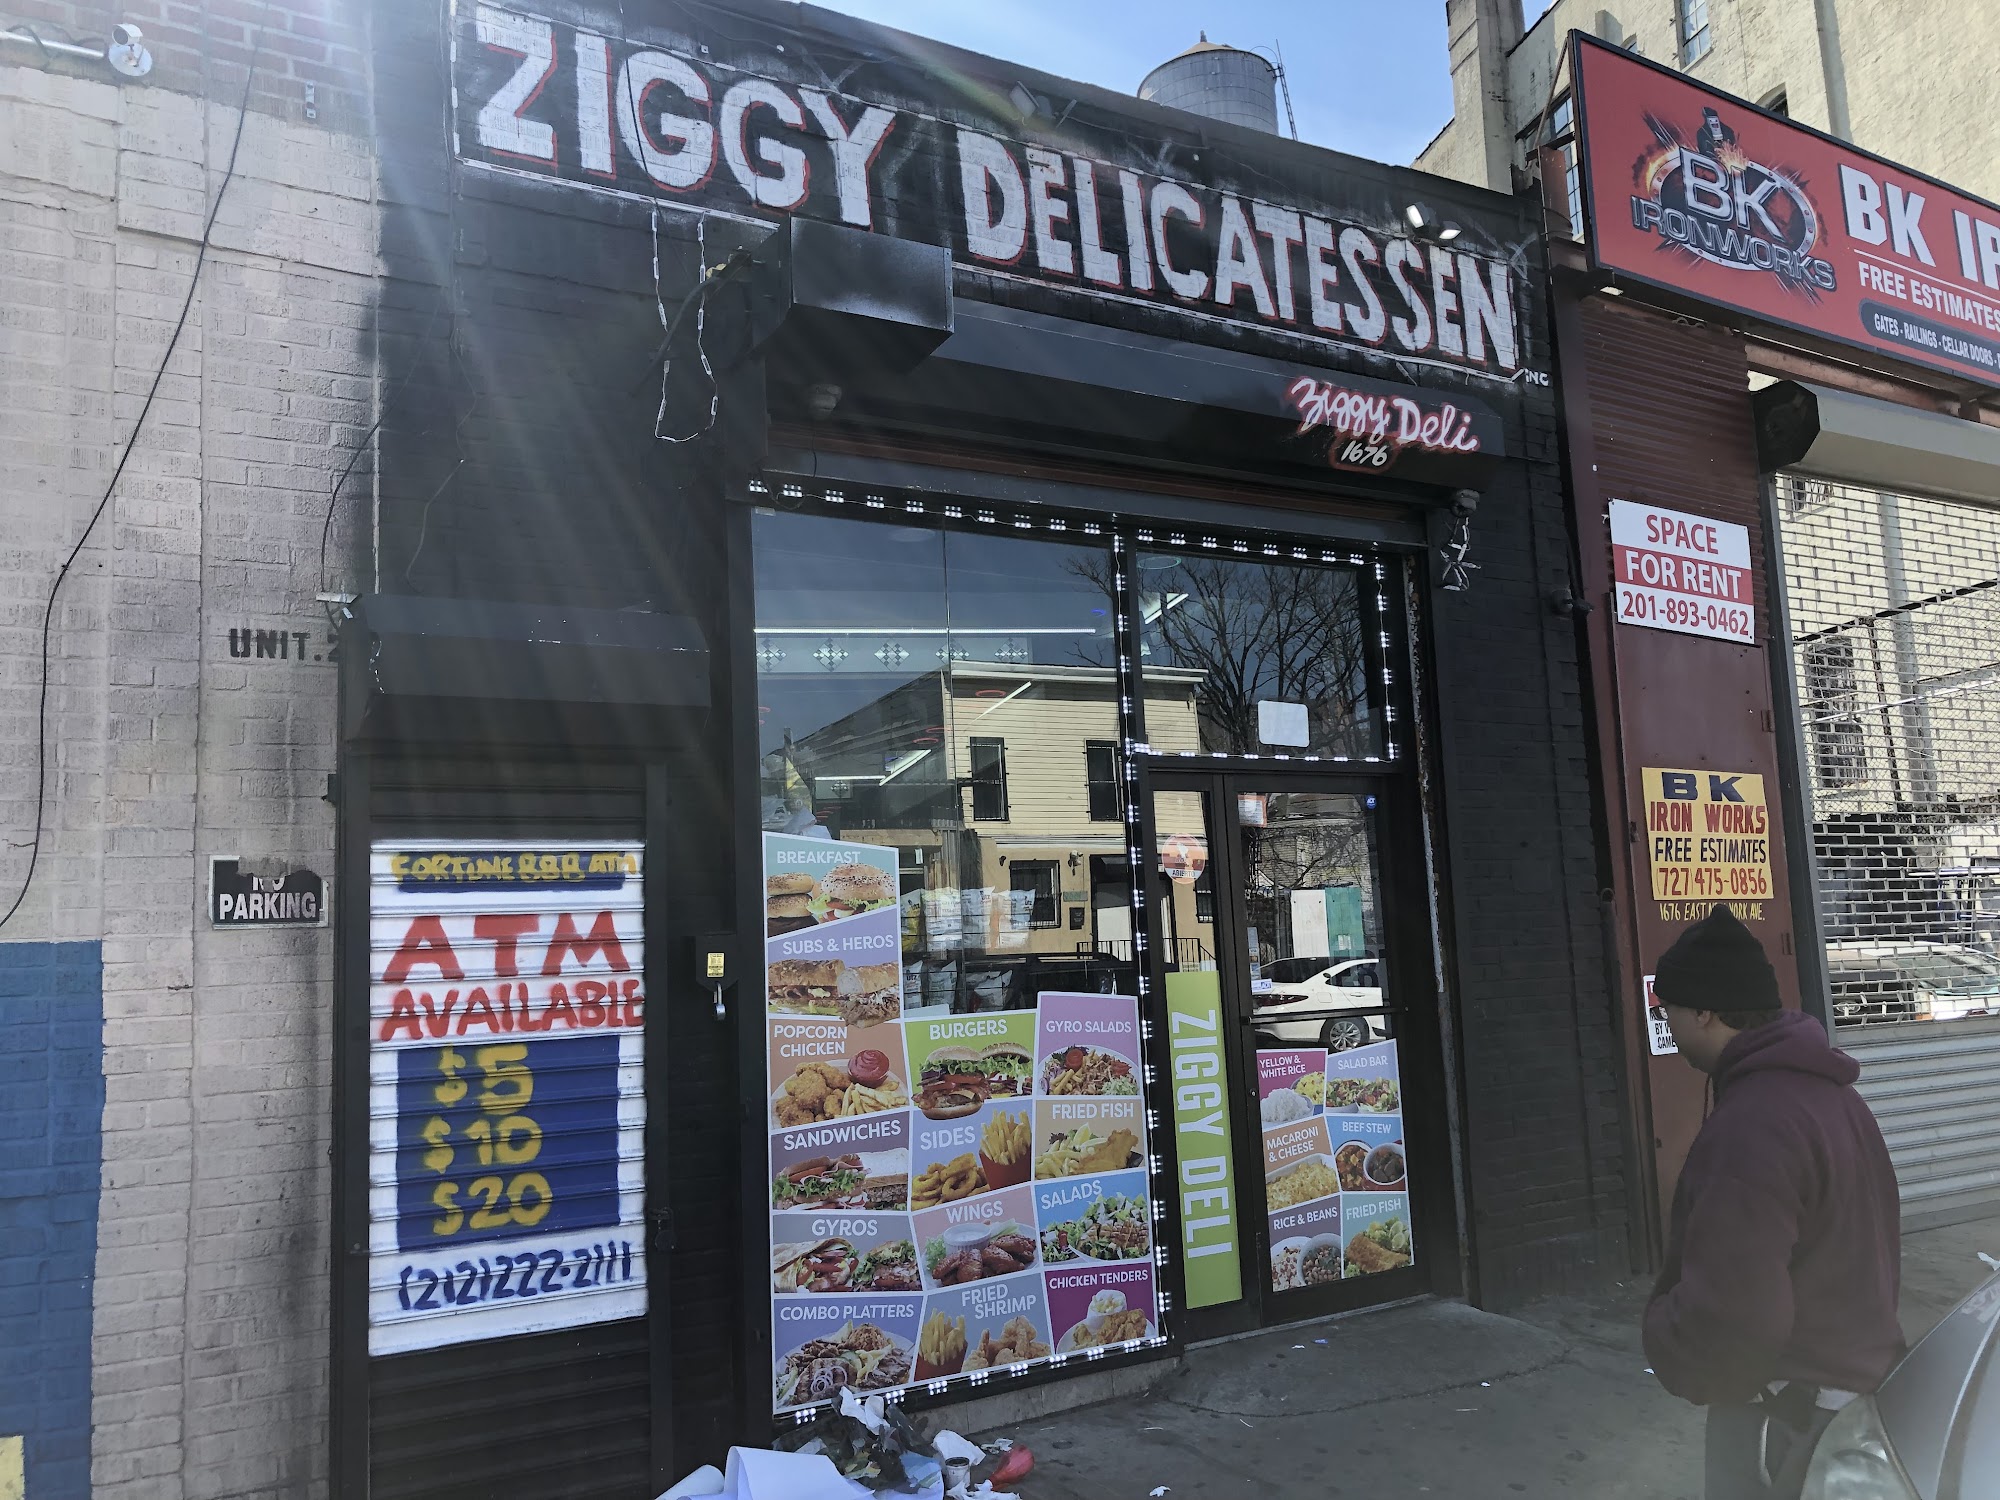 Ziggy deli & grill